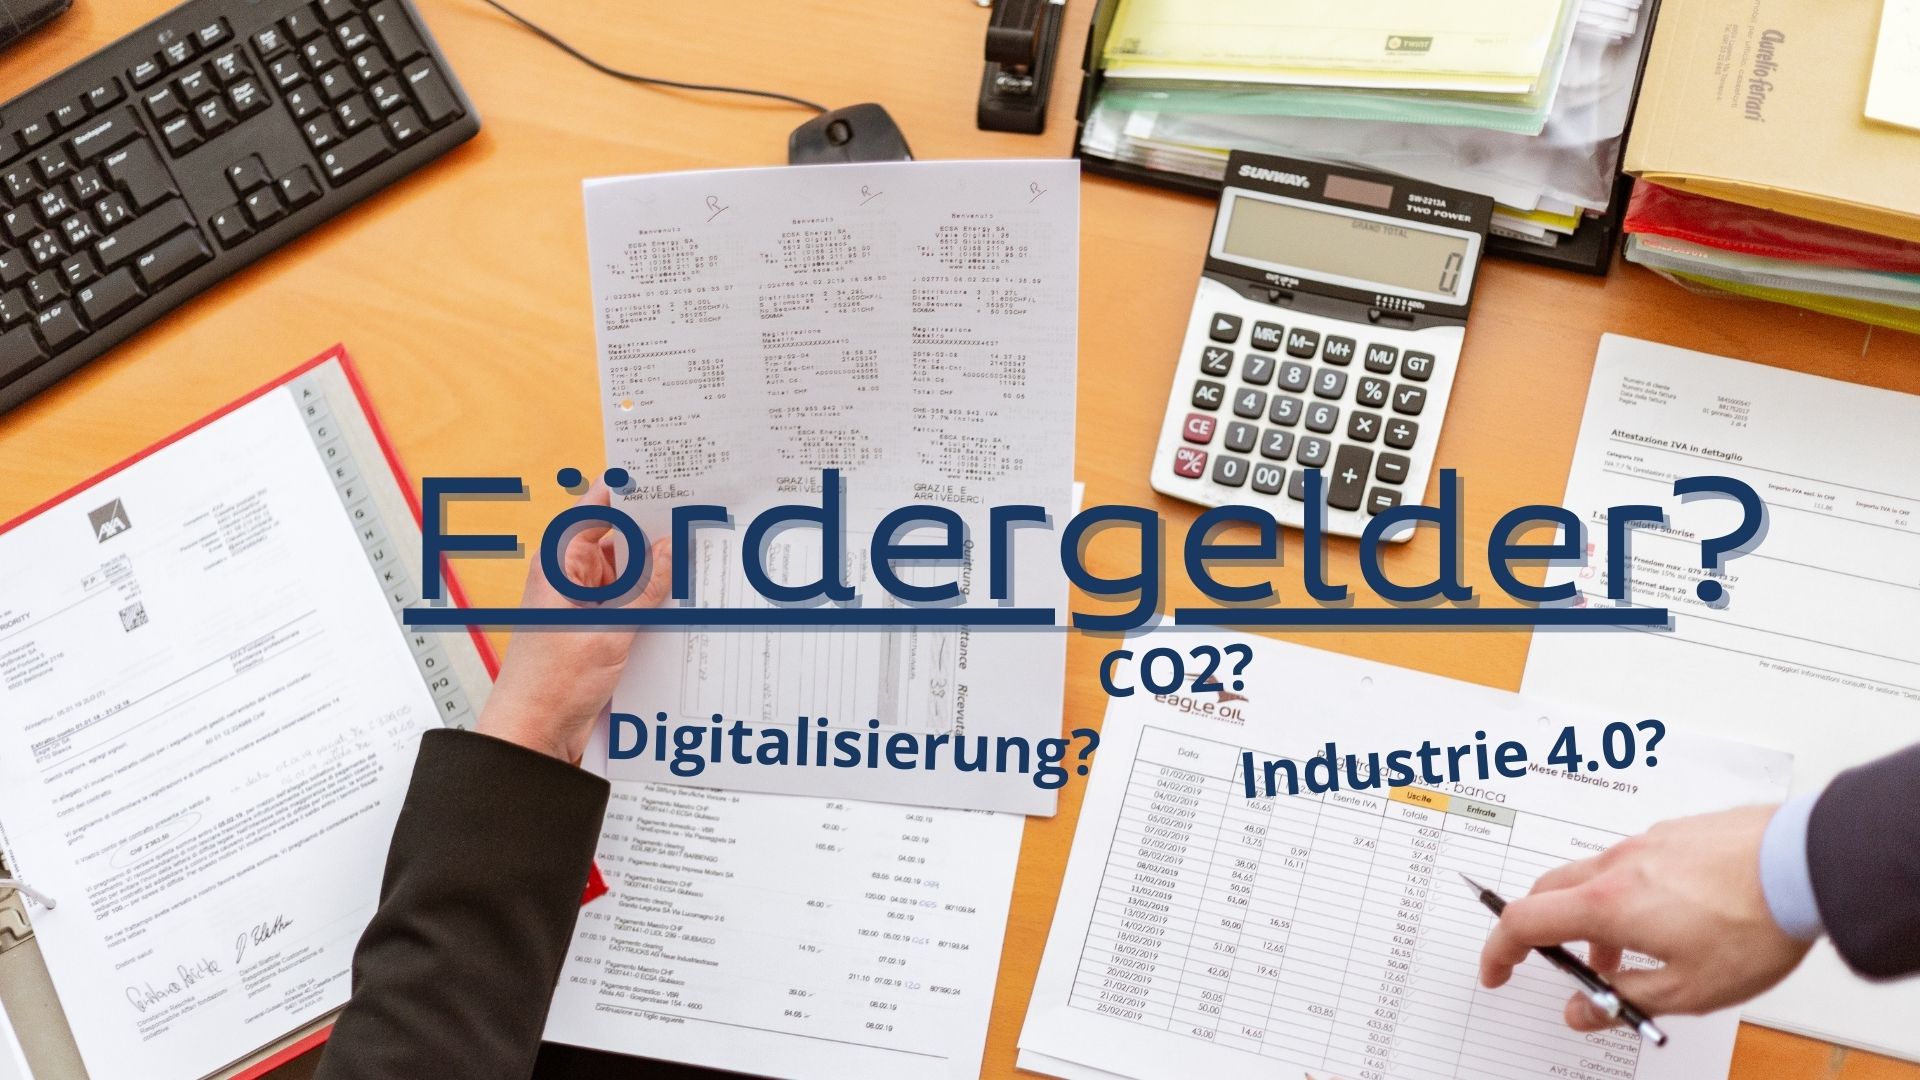 CO2, Industrie 4.0, Digitalisierung ? - Ja, wie kommt man an Fördergelder?